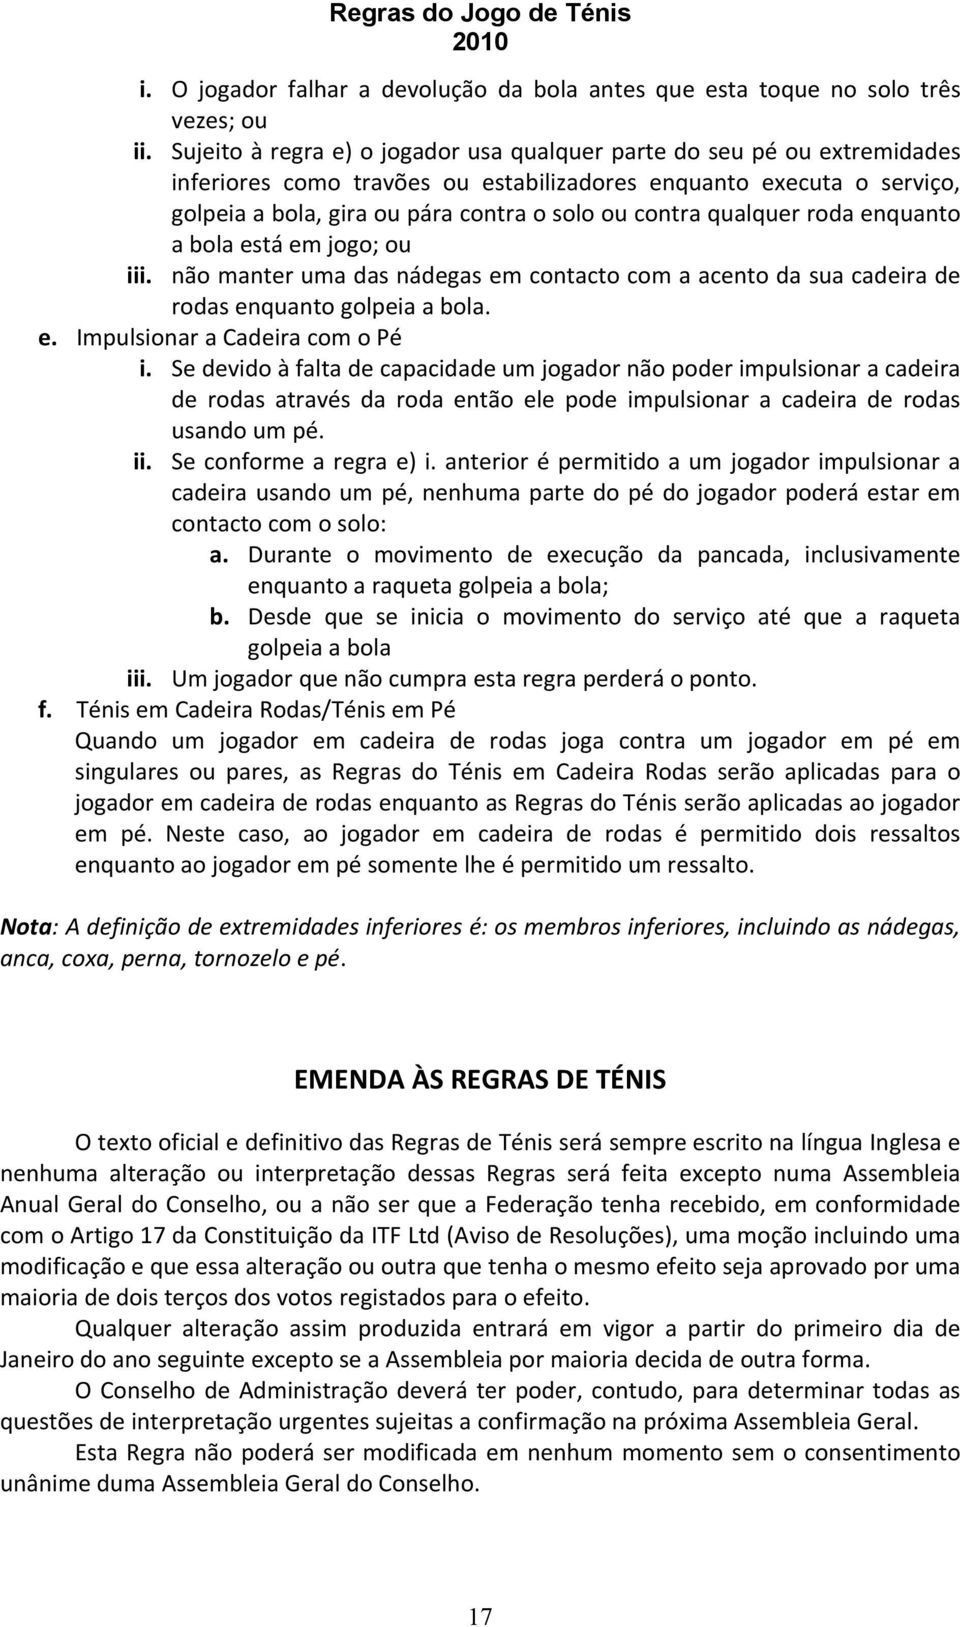 REGRAS DO JOGO DE TÉNIS - PDF Free Download